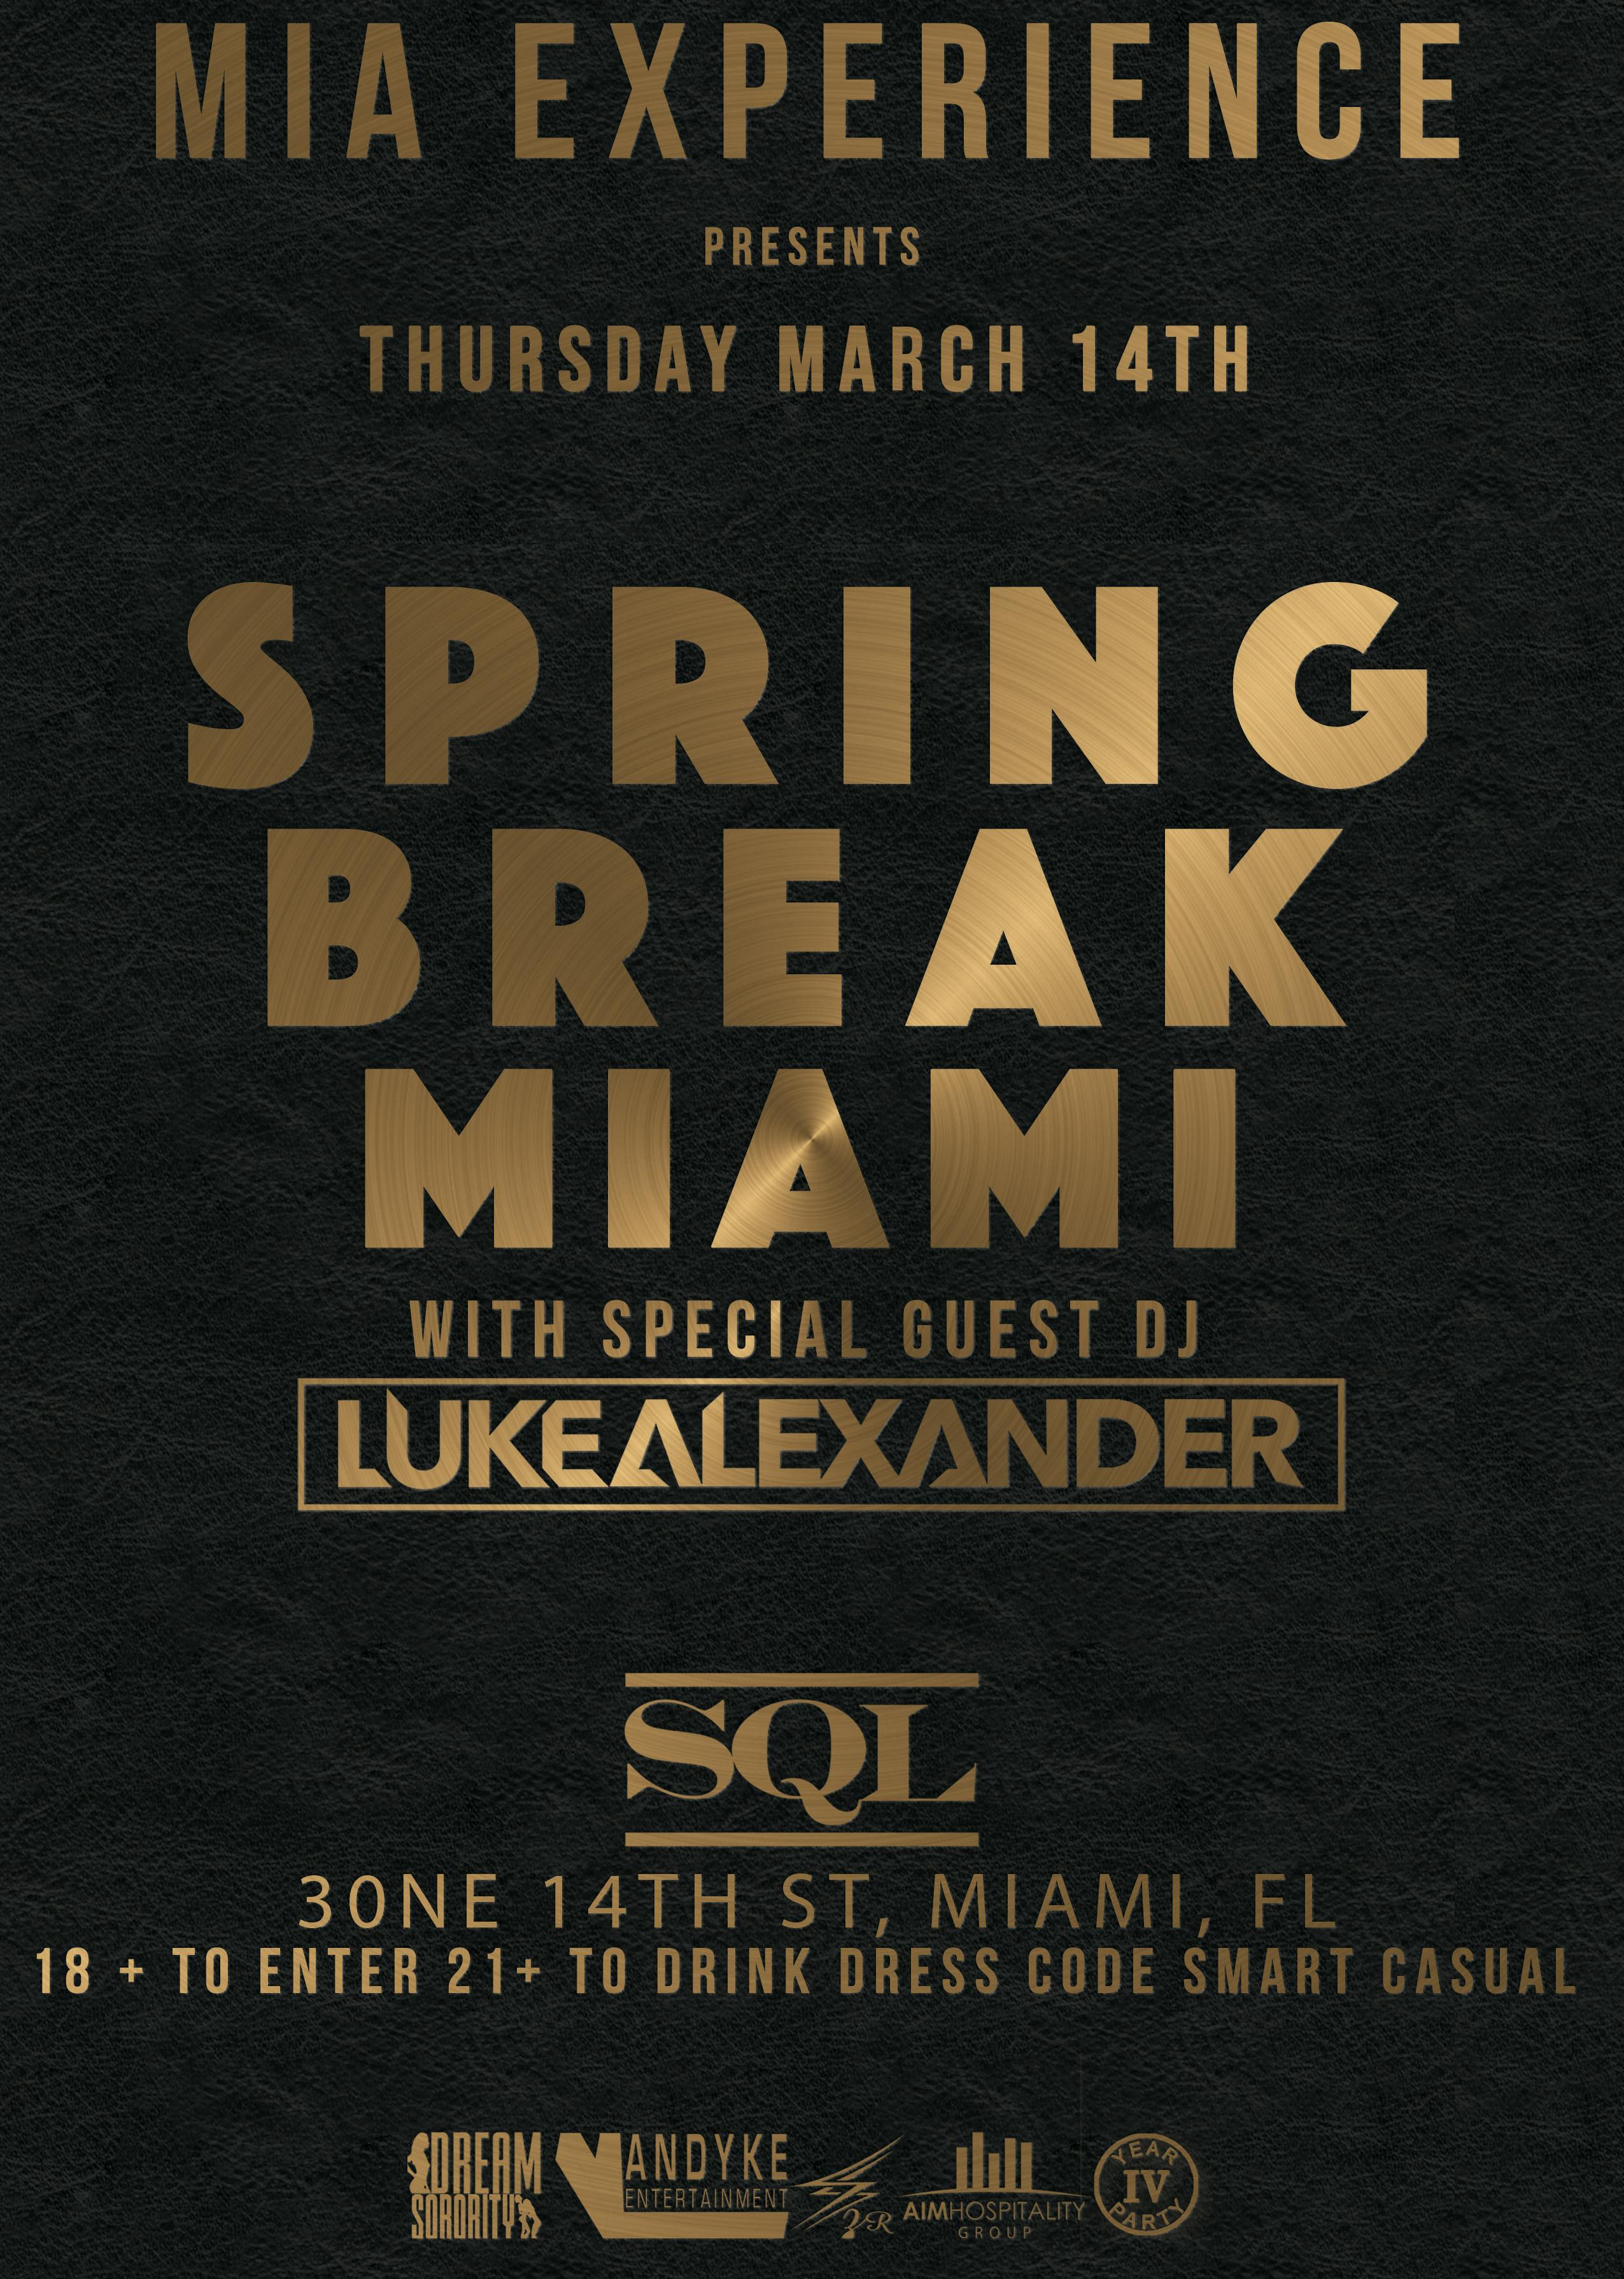 SQL Spring Break MIAMI Party with Luke Alexander 3/14